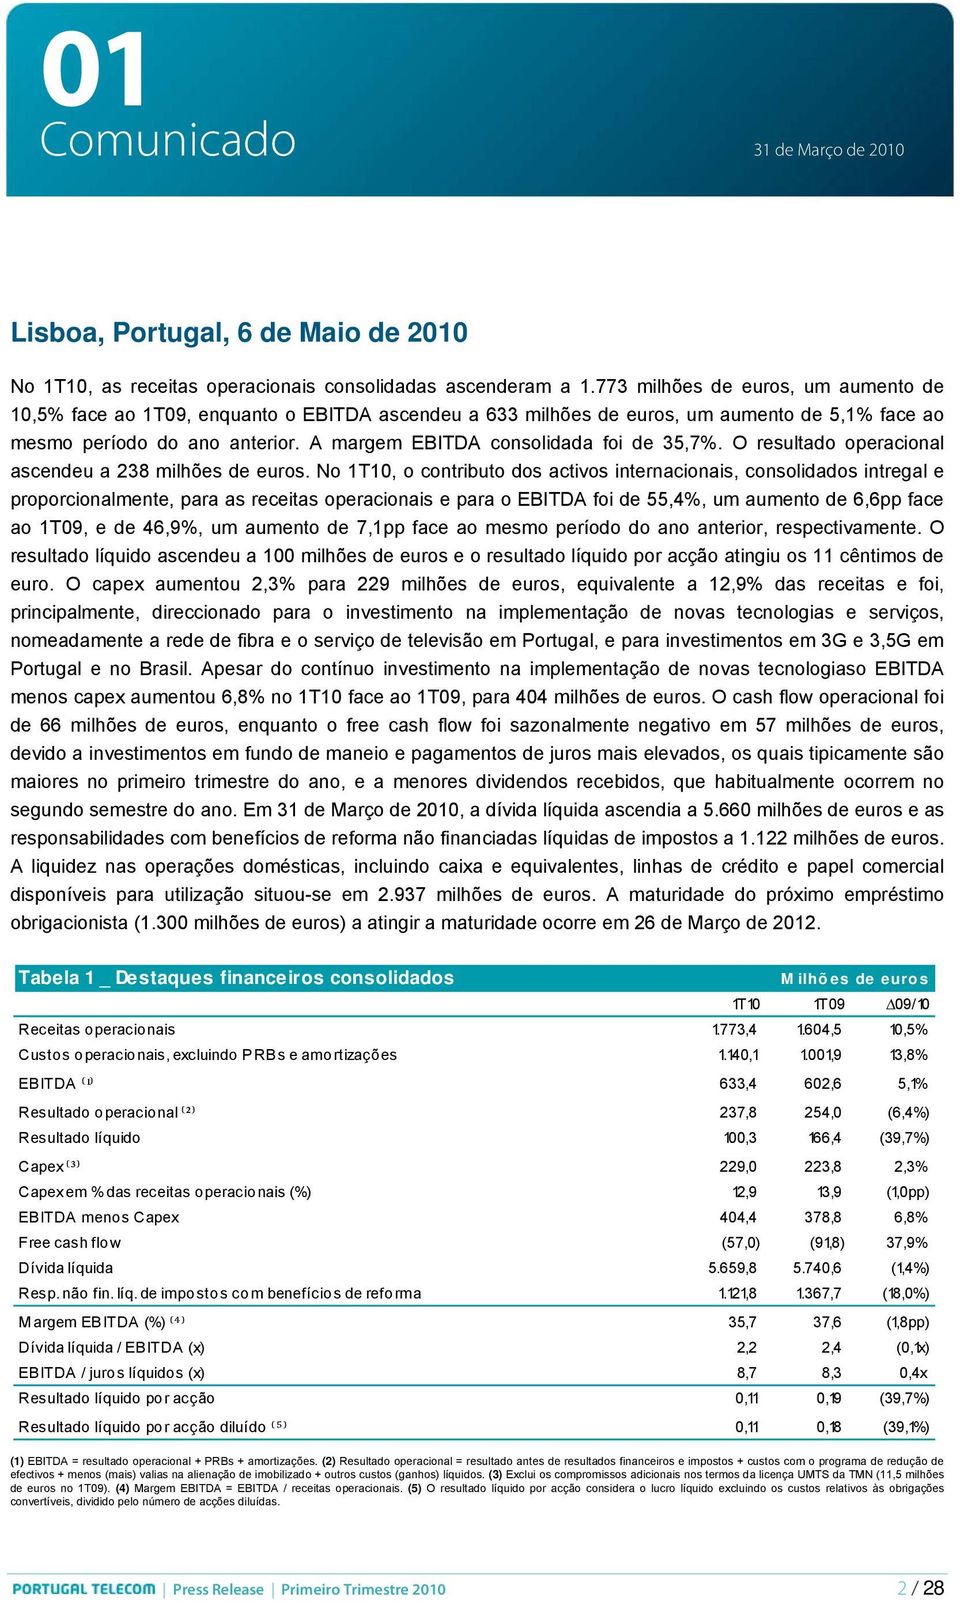 A margem EBITDA consolidada foi de 35,7%. O resultado operacional ascendeu a 238 milhões de euros.